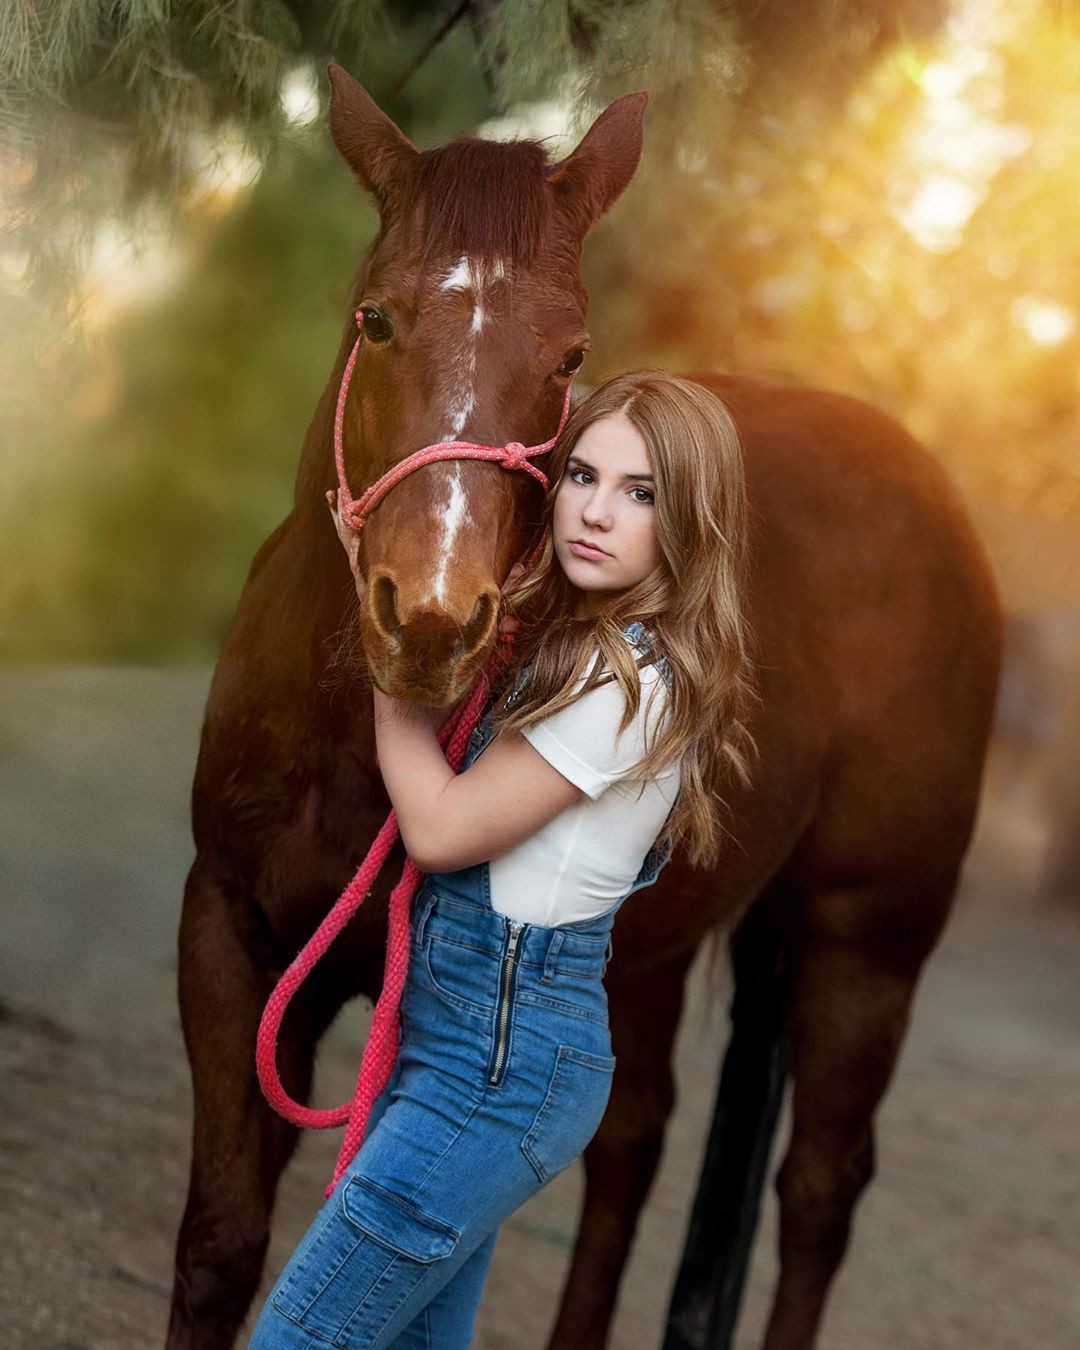 Piper Rockelle, suministros para caballos, tachuelas de caballos, vertebrado: Piper Rockelle Instagram  